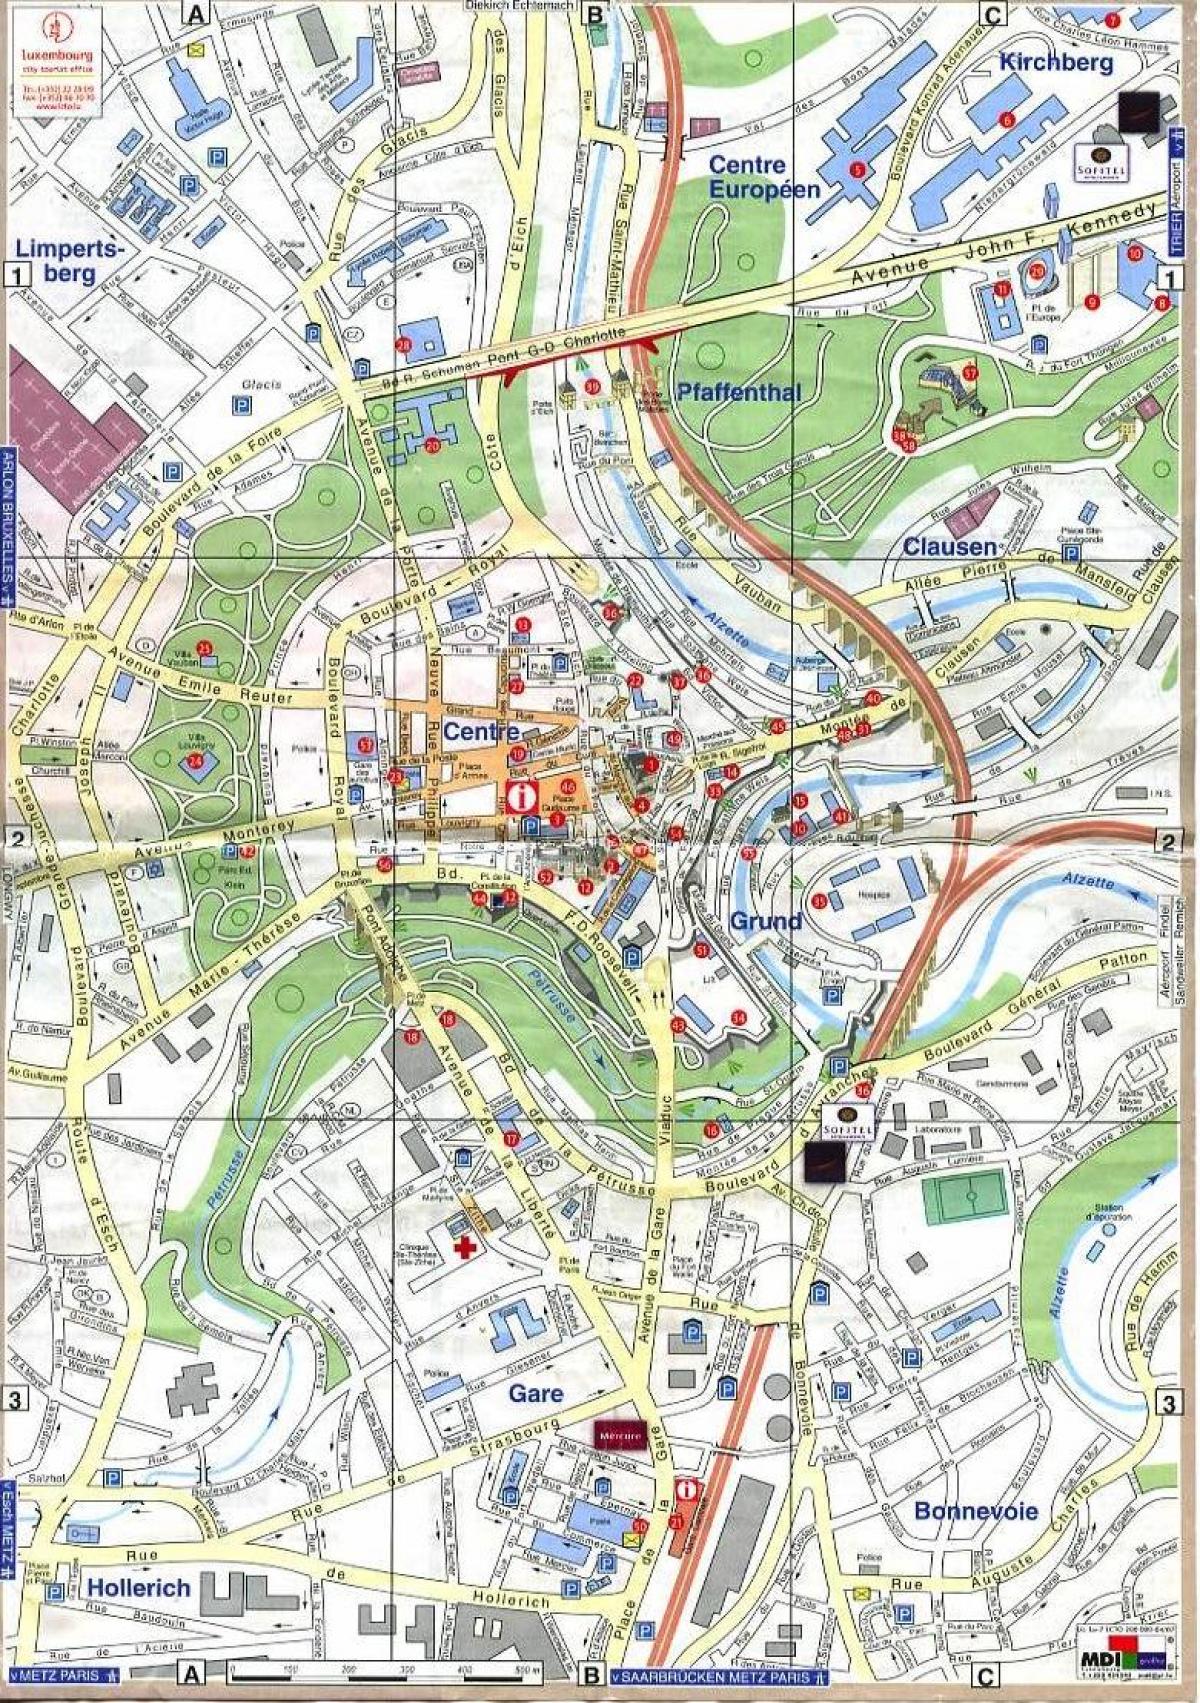 χάρτης του Λουξεμβούργου, παλιά πόλη